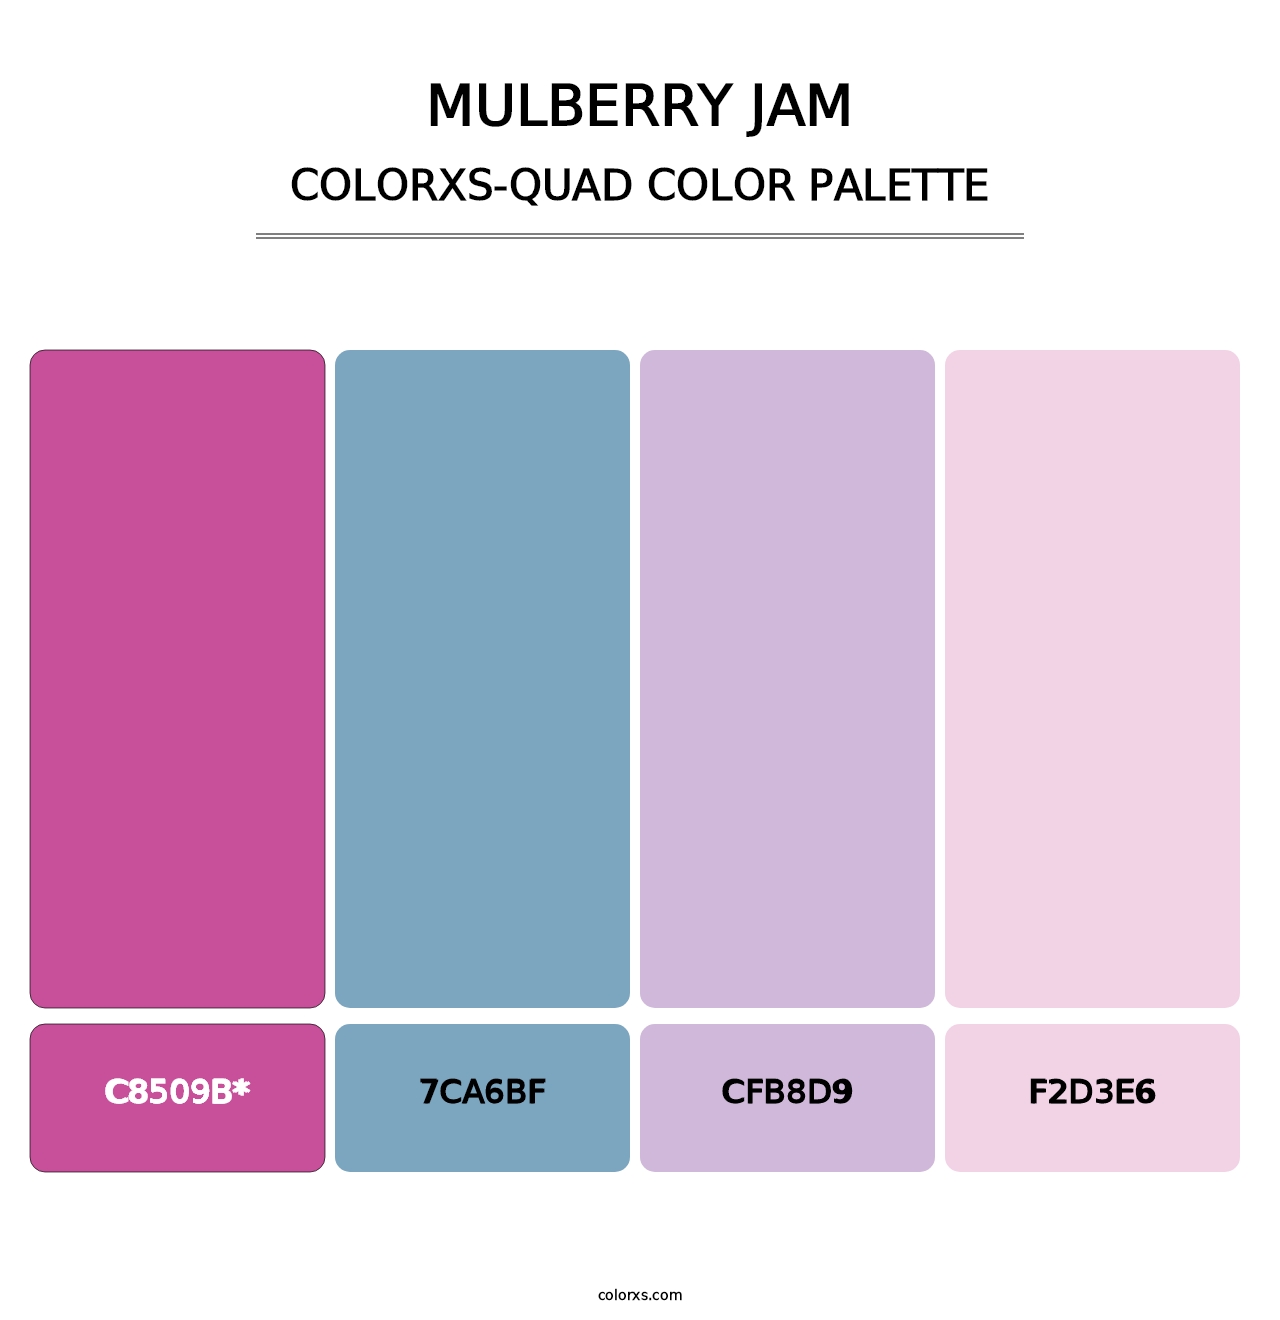 Mulberry Jam - Colorxs Quad Palette